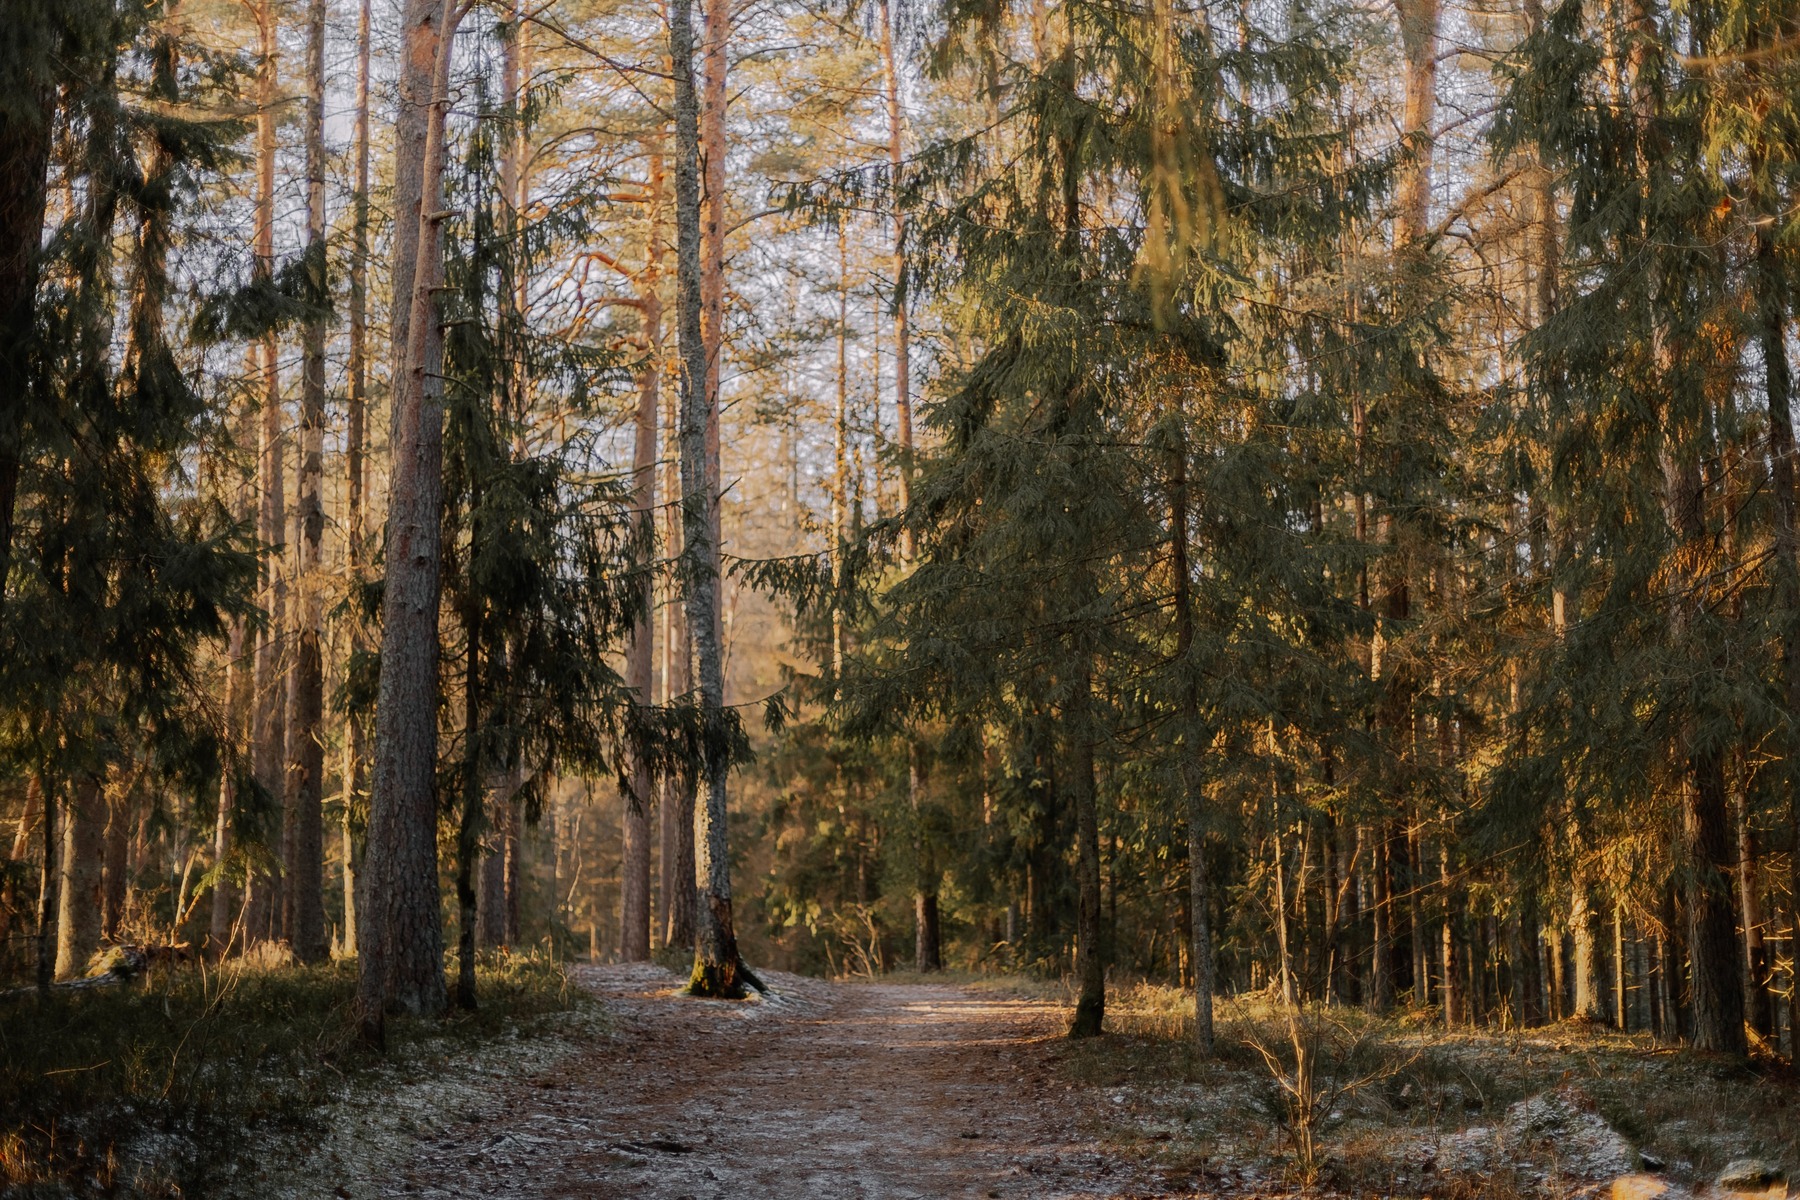 Vinterns andlöst vackra vandring: Utforska Skuleskogens nationalpark